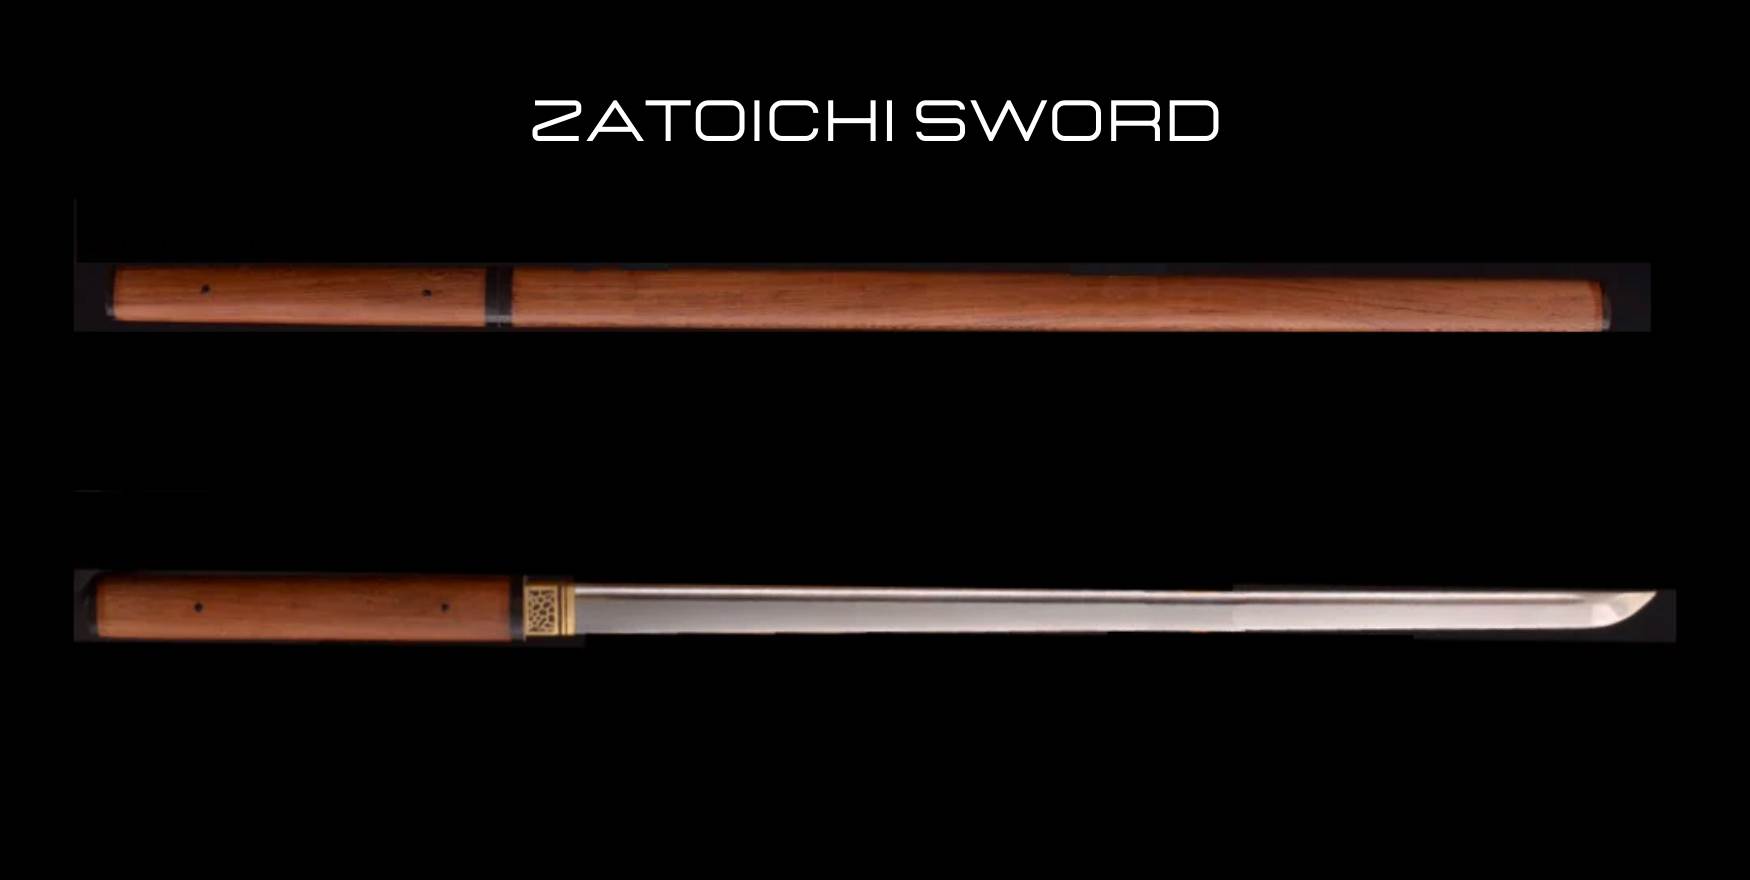 zatoichi sword style